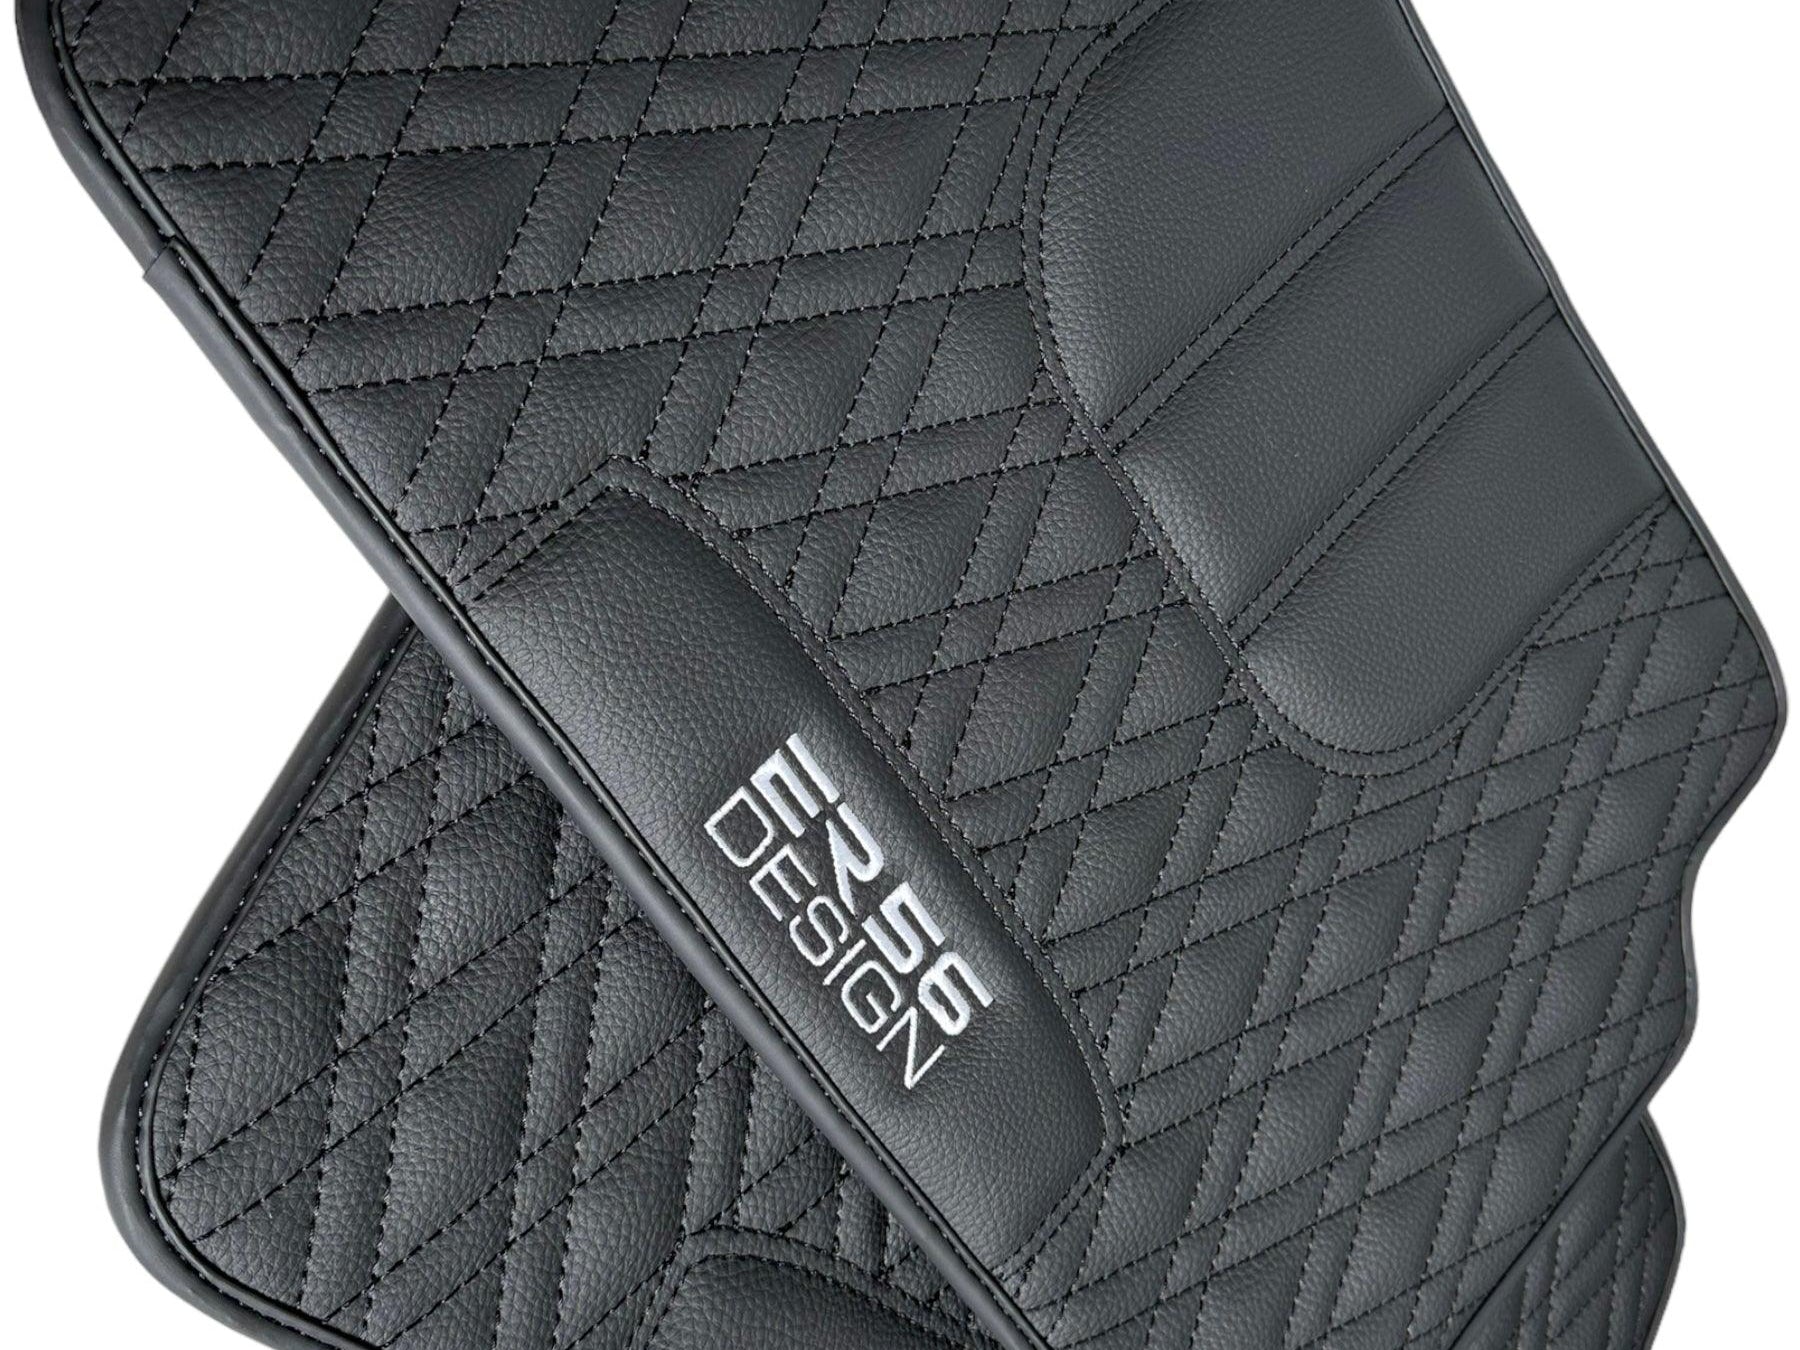 Floor Mats For BMW 6 Series F13 2-door Coupe Black Leather Er56 Design - AutoWin